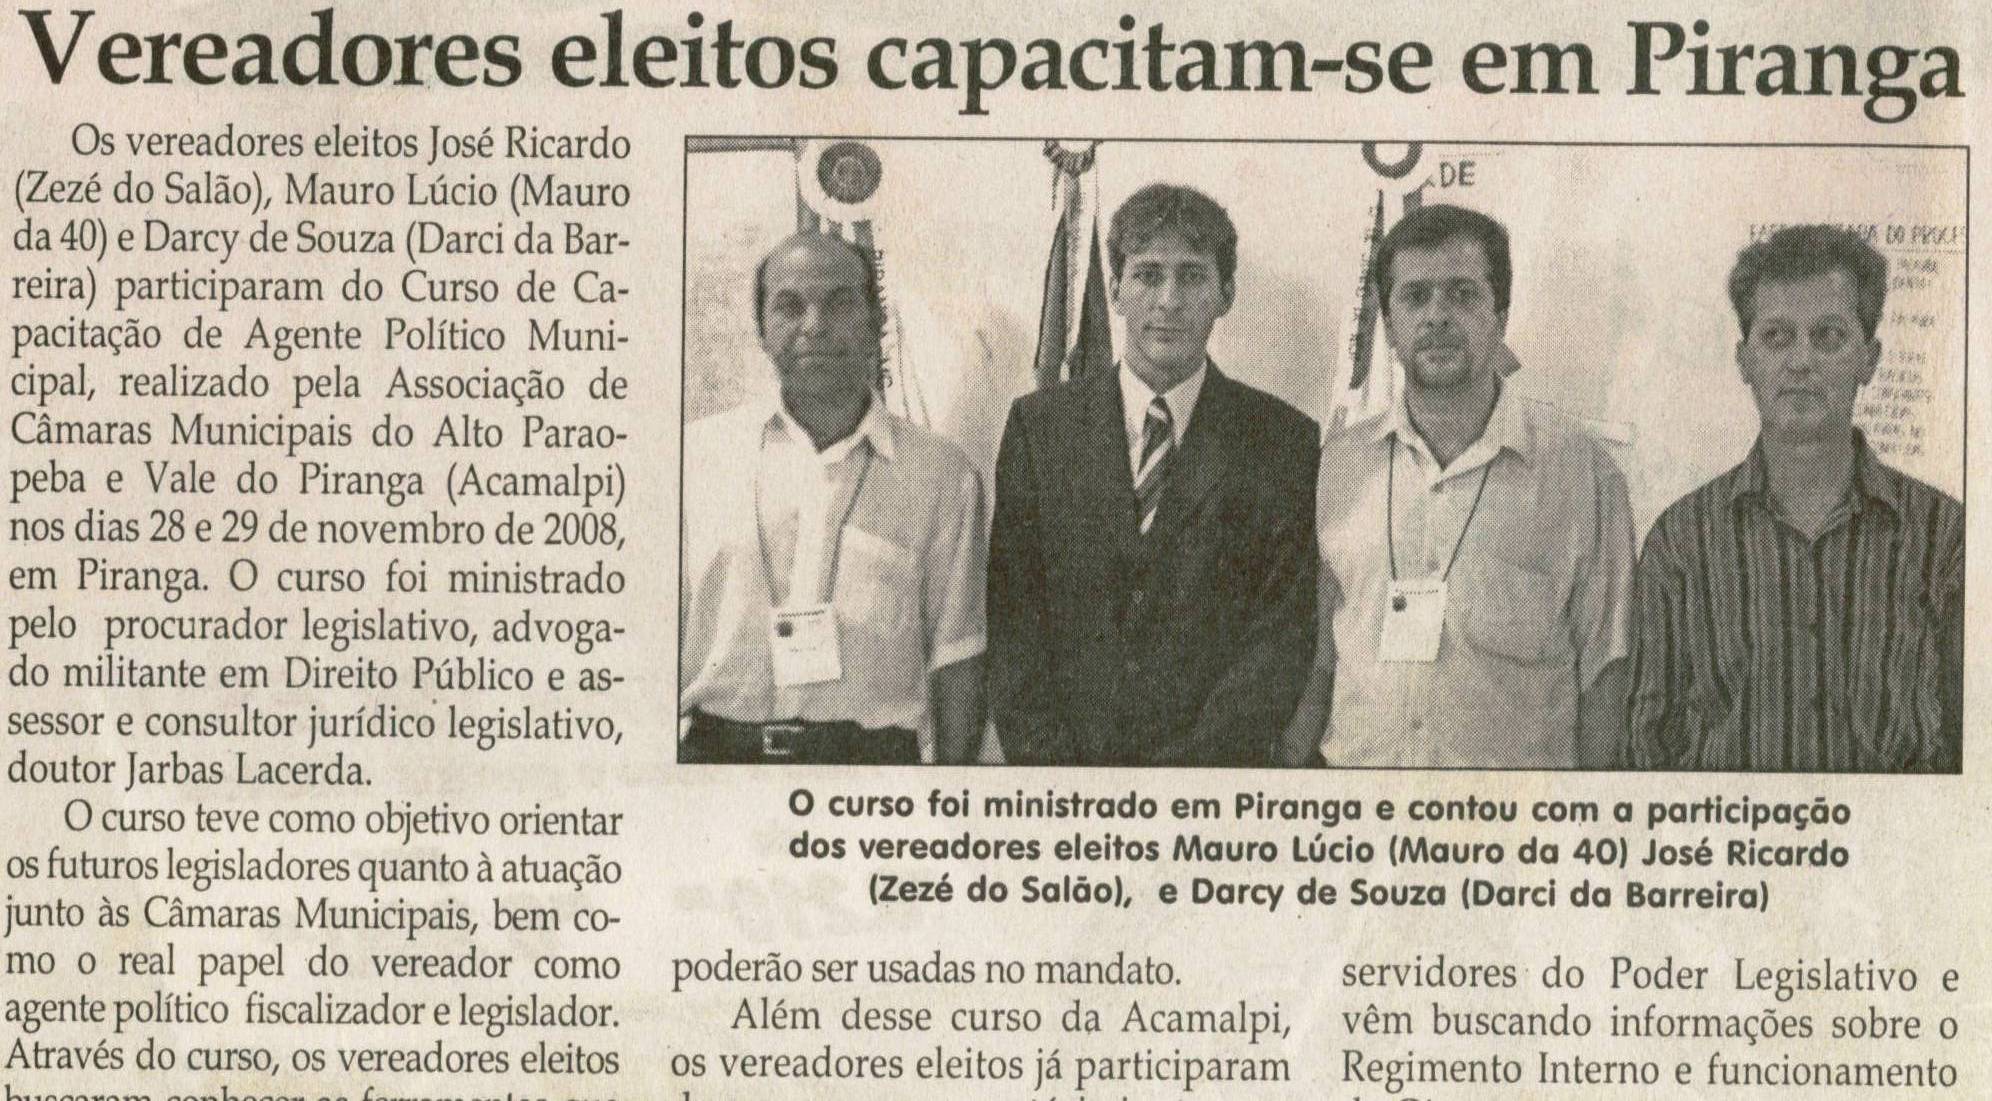 Vereadores eleitos capacitam-se em Piranga. Jornal Correio da Cidade, Conselheiro Lafaiete, 13 dez 2008, p. 4.